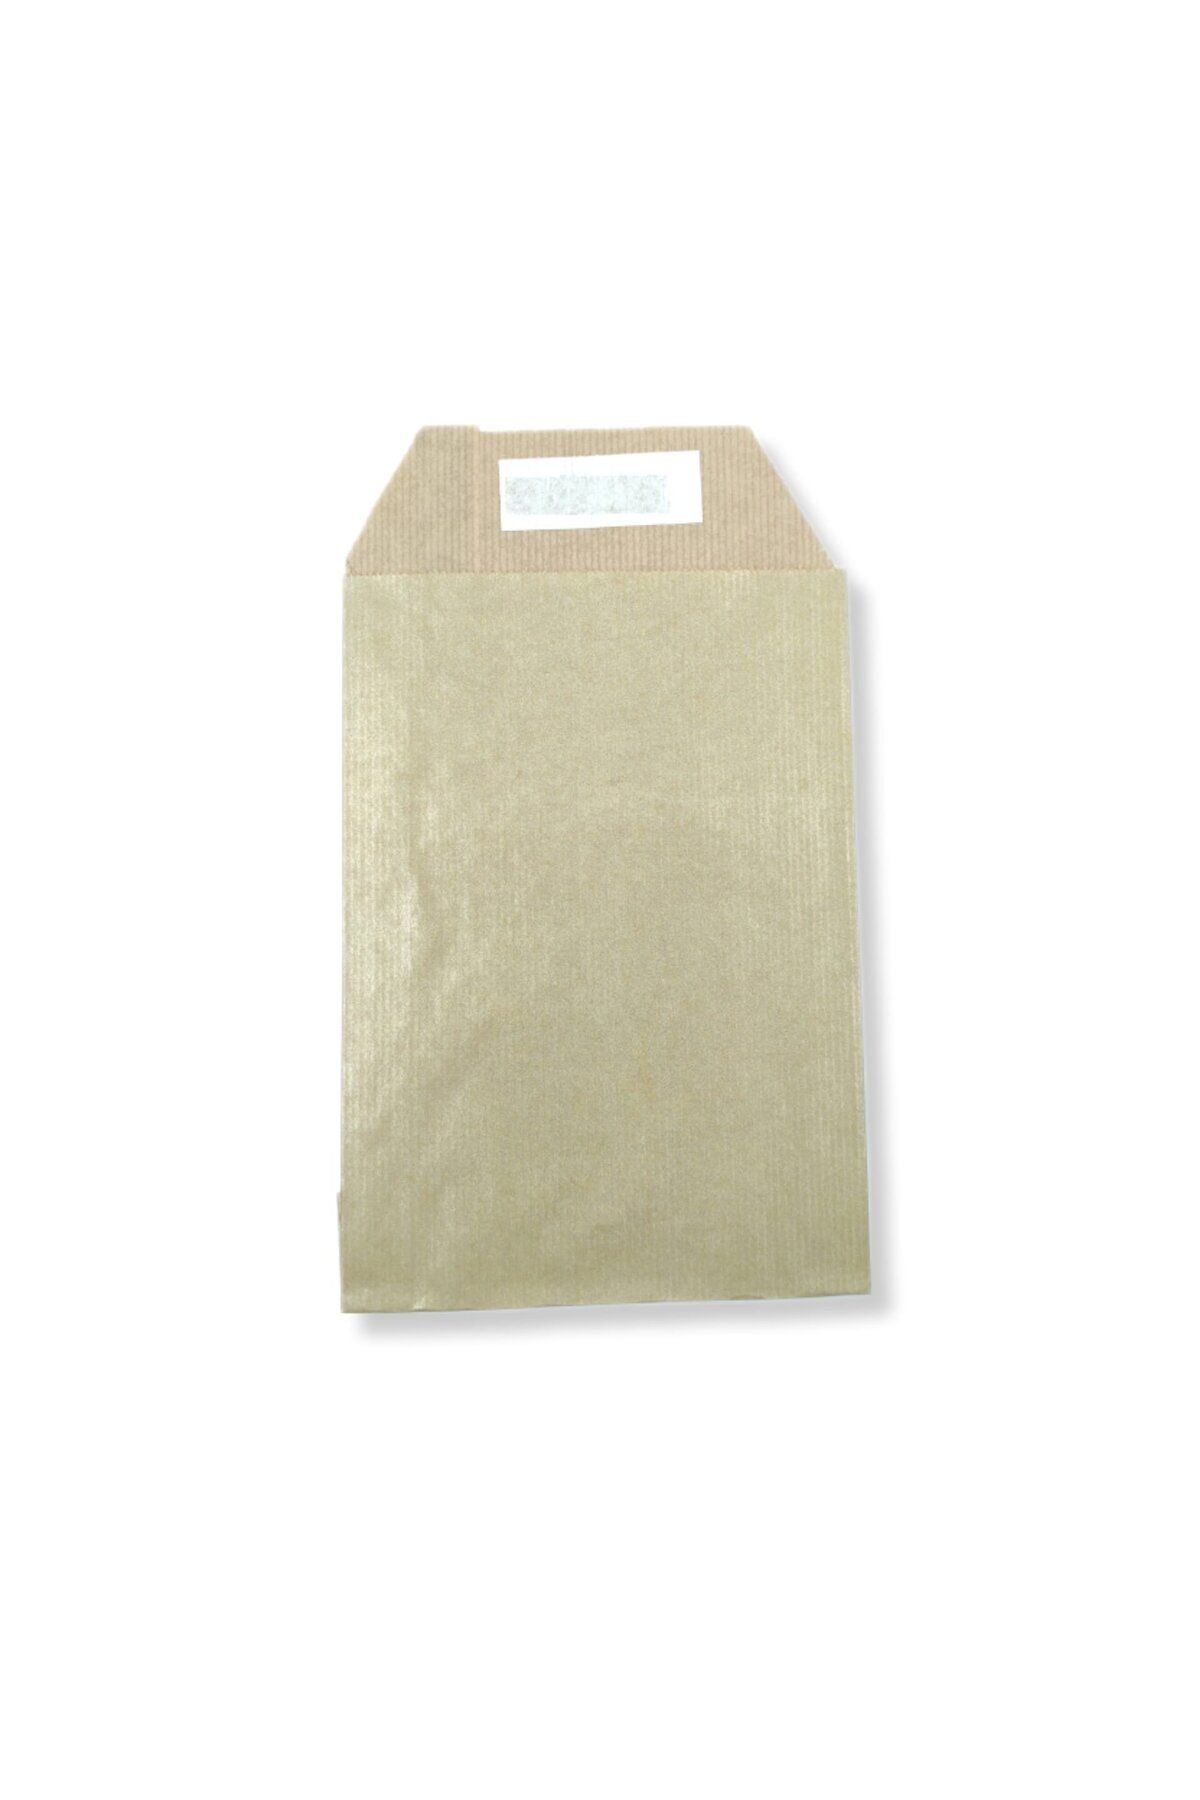 roco paper Hediye Paketi 15*4*21 cm Dipsiz Kese Kağıdı Yapışkanlı Ağız Altın 25'li Paket